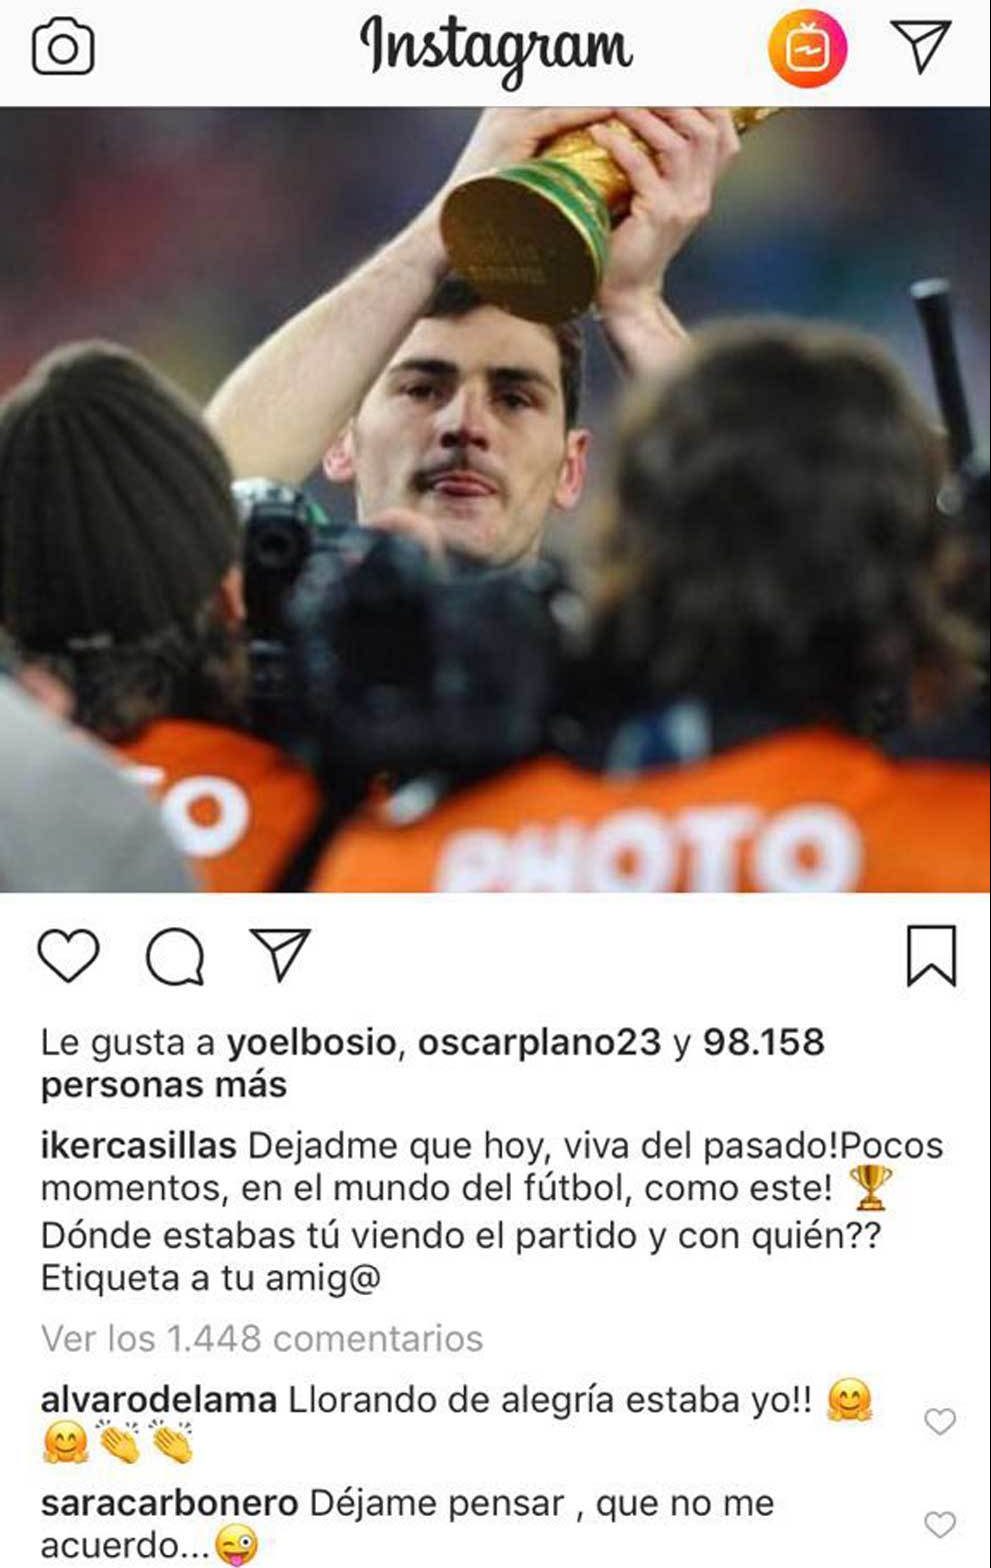 Sara Carbonero trolea a Casillas en Instagram y ‘se olvida’ del beso tras la final del Mundial